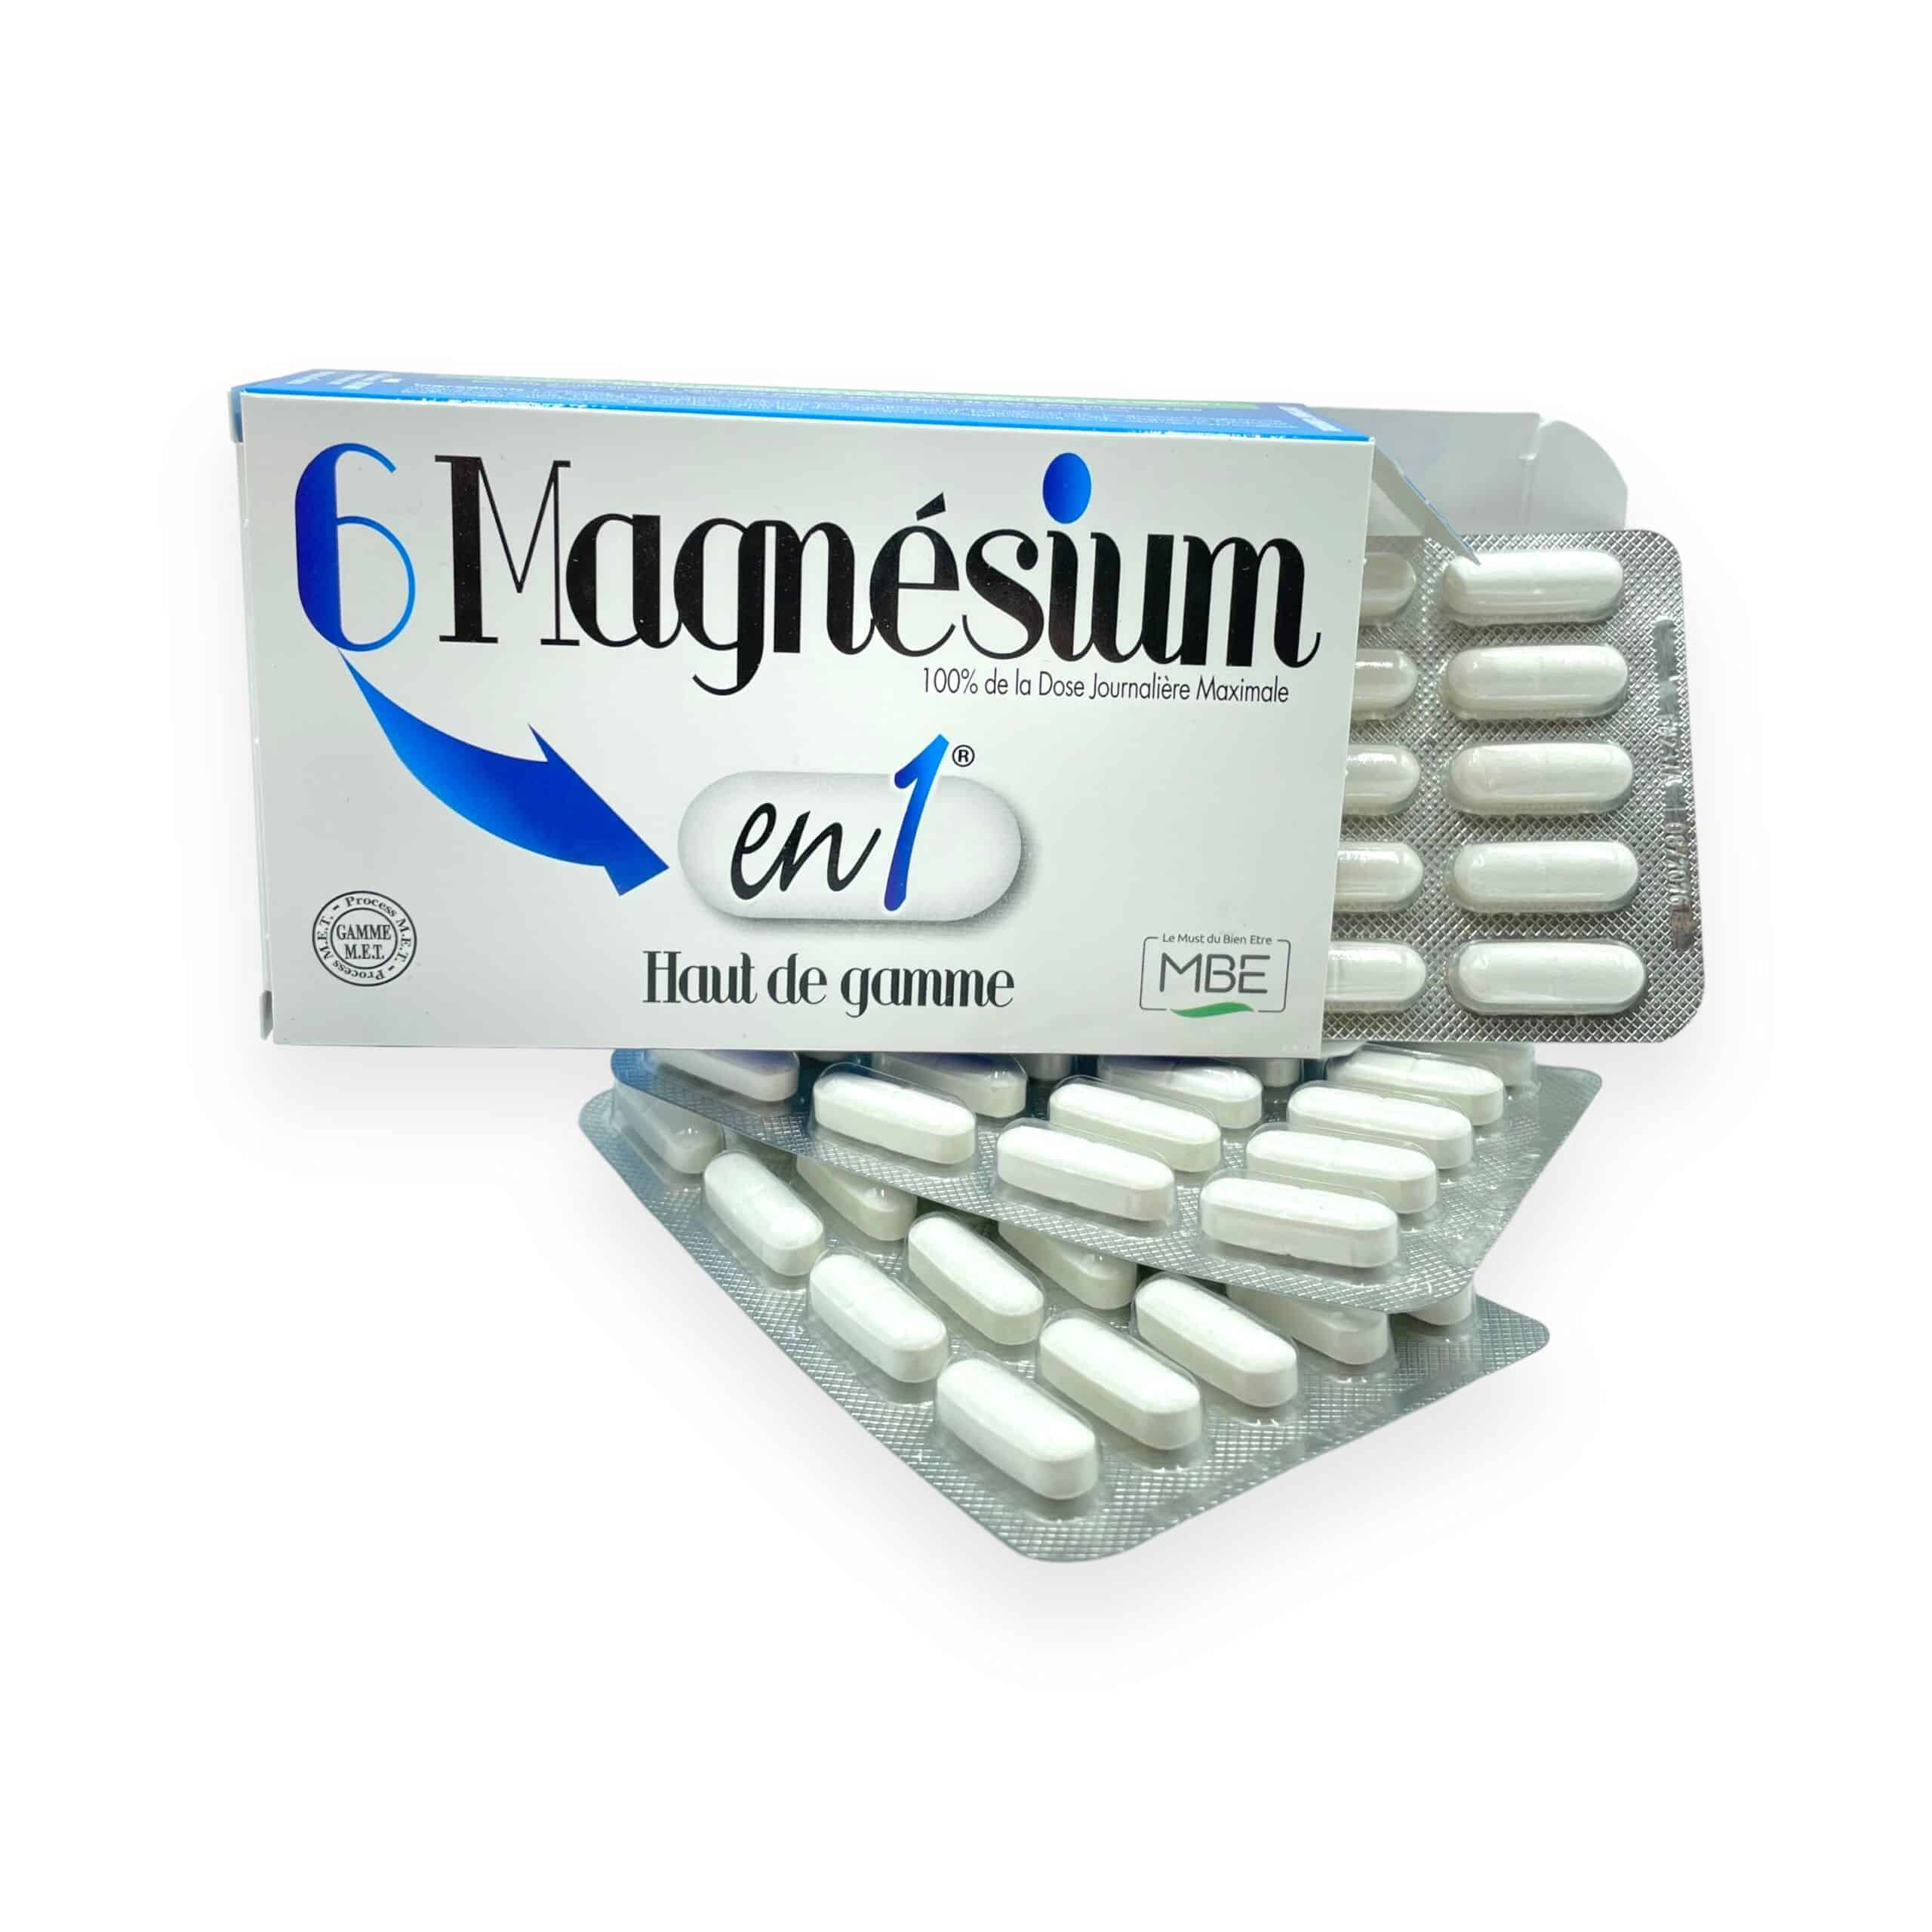 6 Magnésium en 1 du Laboratoire MBE